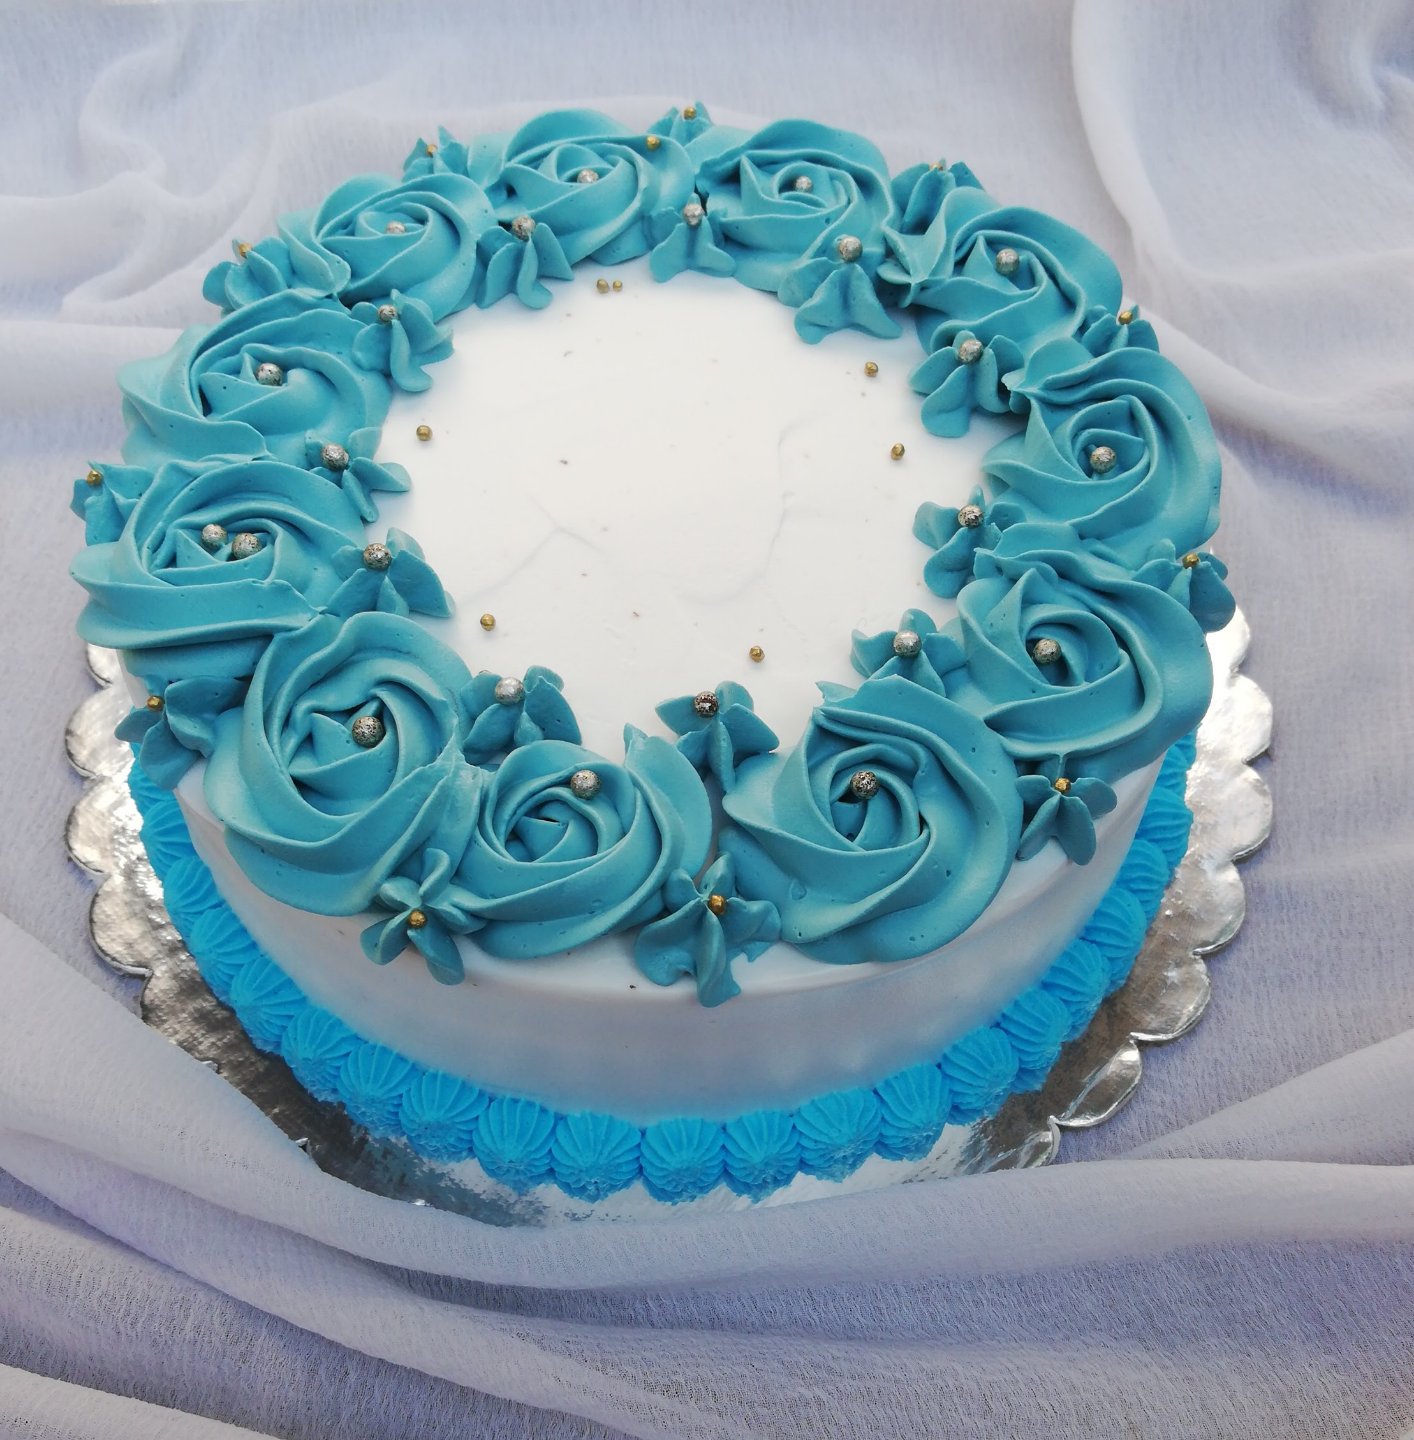 Tiffany Circle Cake Design - Decorated Cake by Frisco - CakesDecor